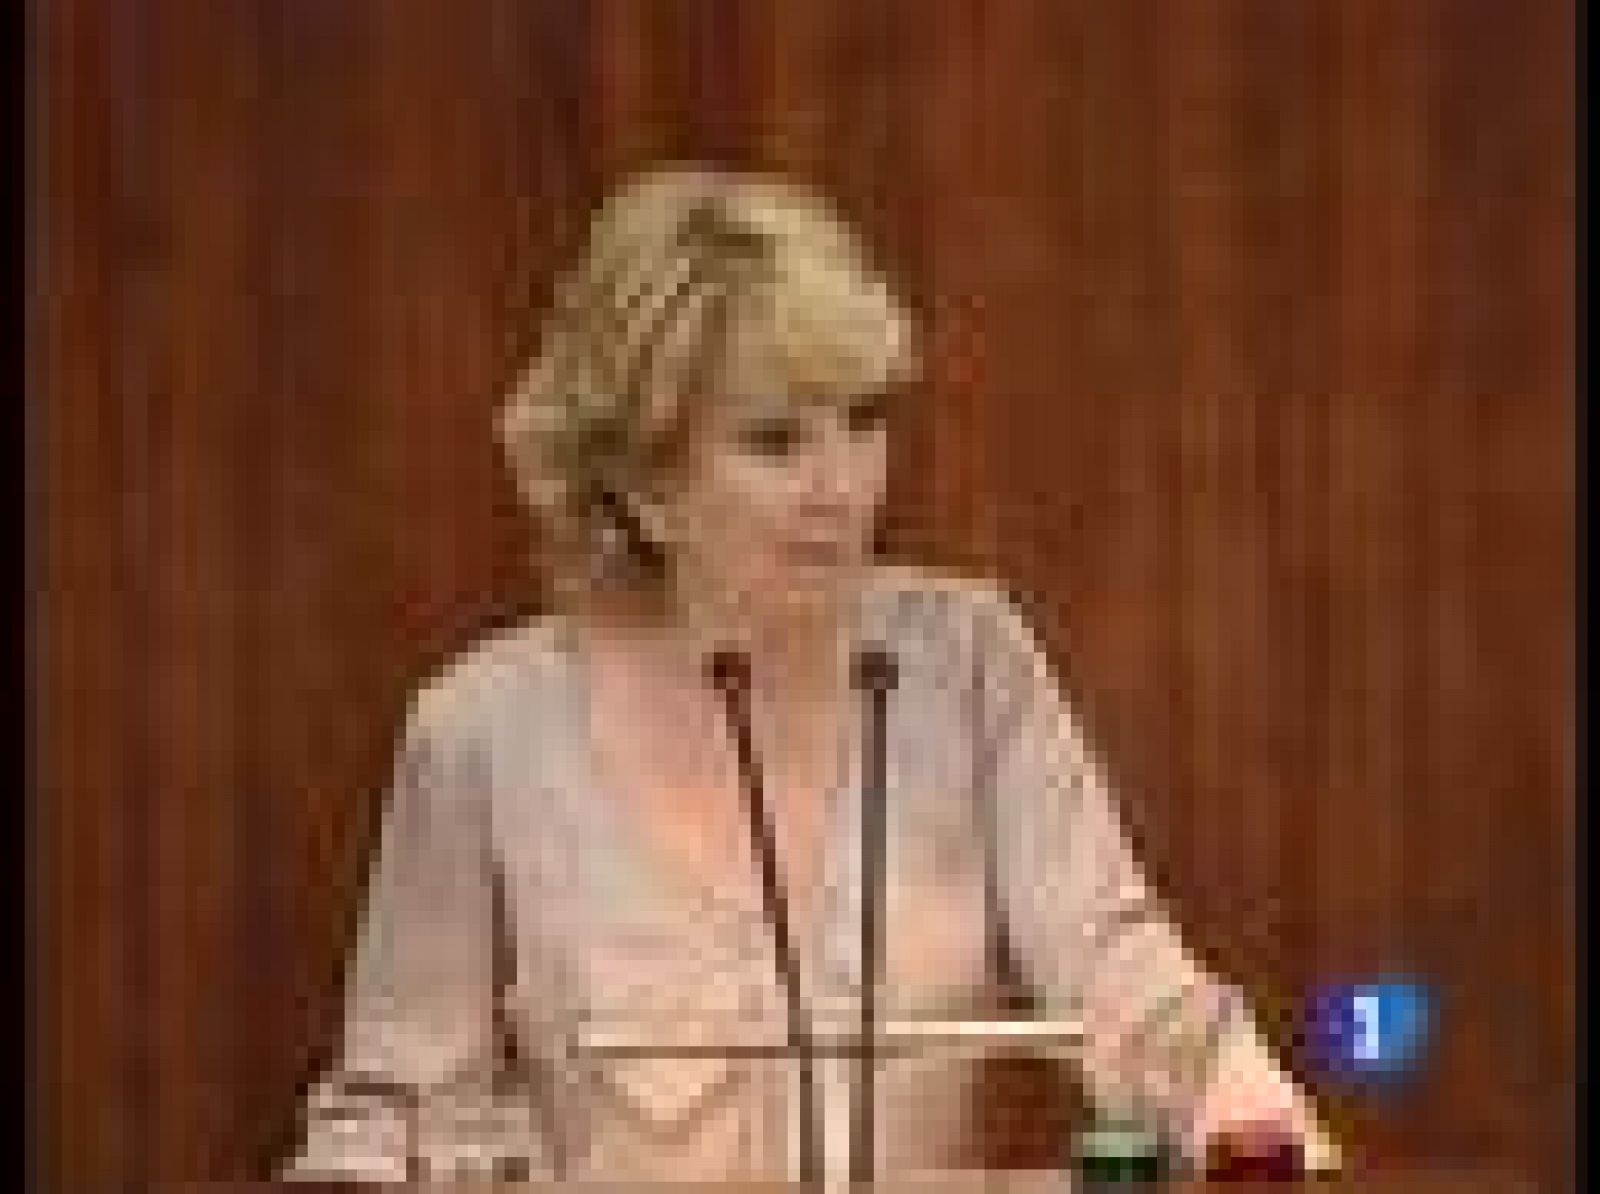  La presidenta de Madrid, Esperanza Aguirre, ha confirmado en el Debate sobre el Estado de la Región que habrá un ajuste en el número de liberados sindicales de la Comunidad. Será respetuoso con la ley y los derechos de los trabajadores